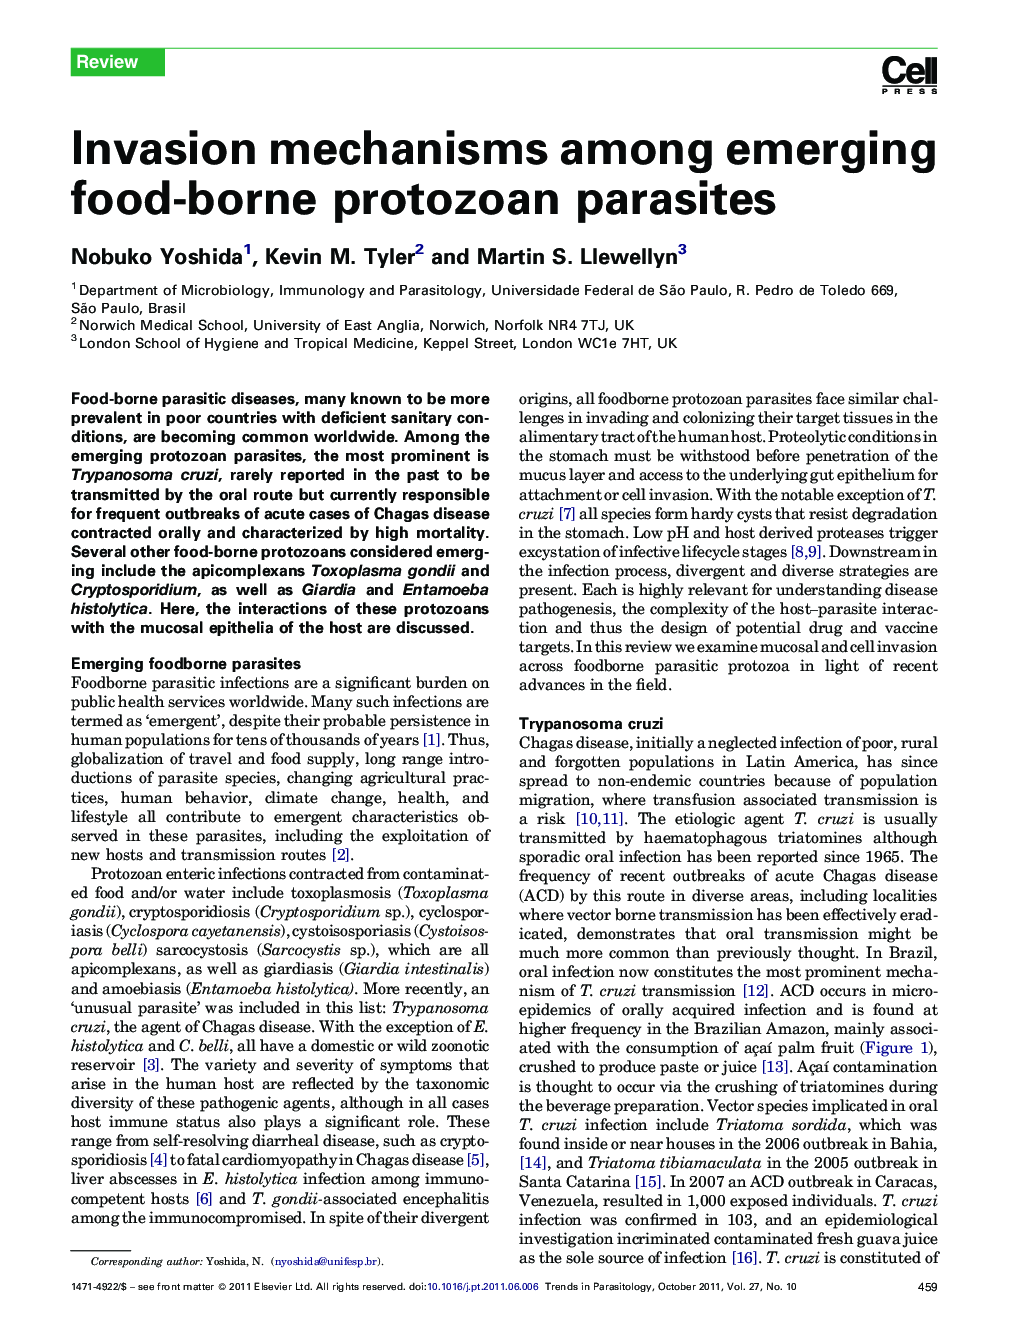 Invasion mechanisms among emerging food-borne protozoan parasites